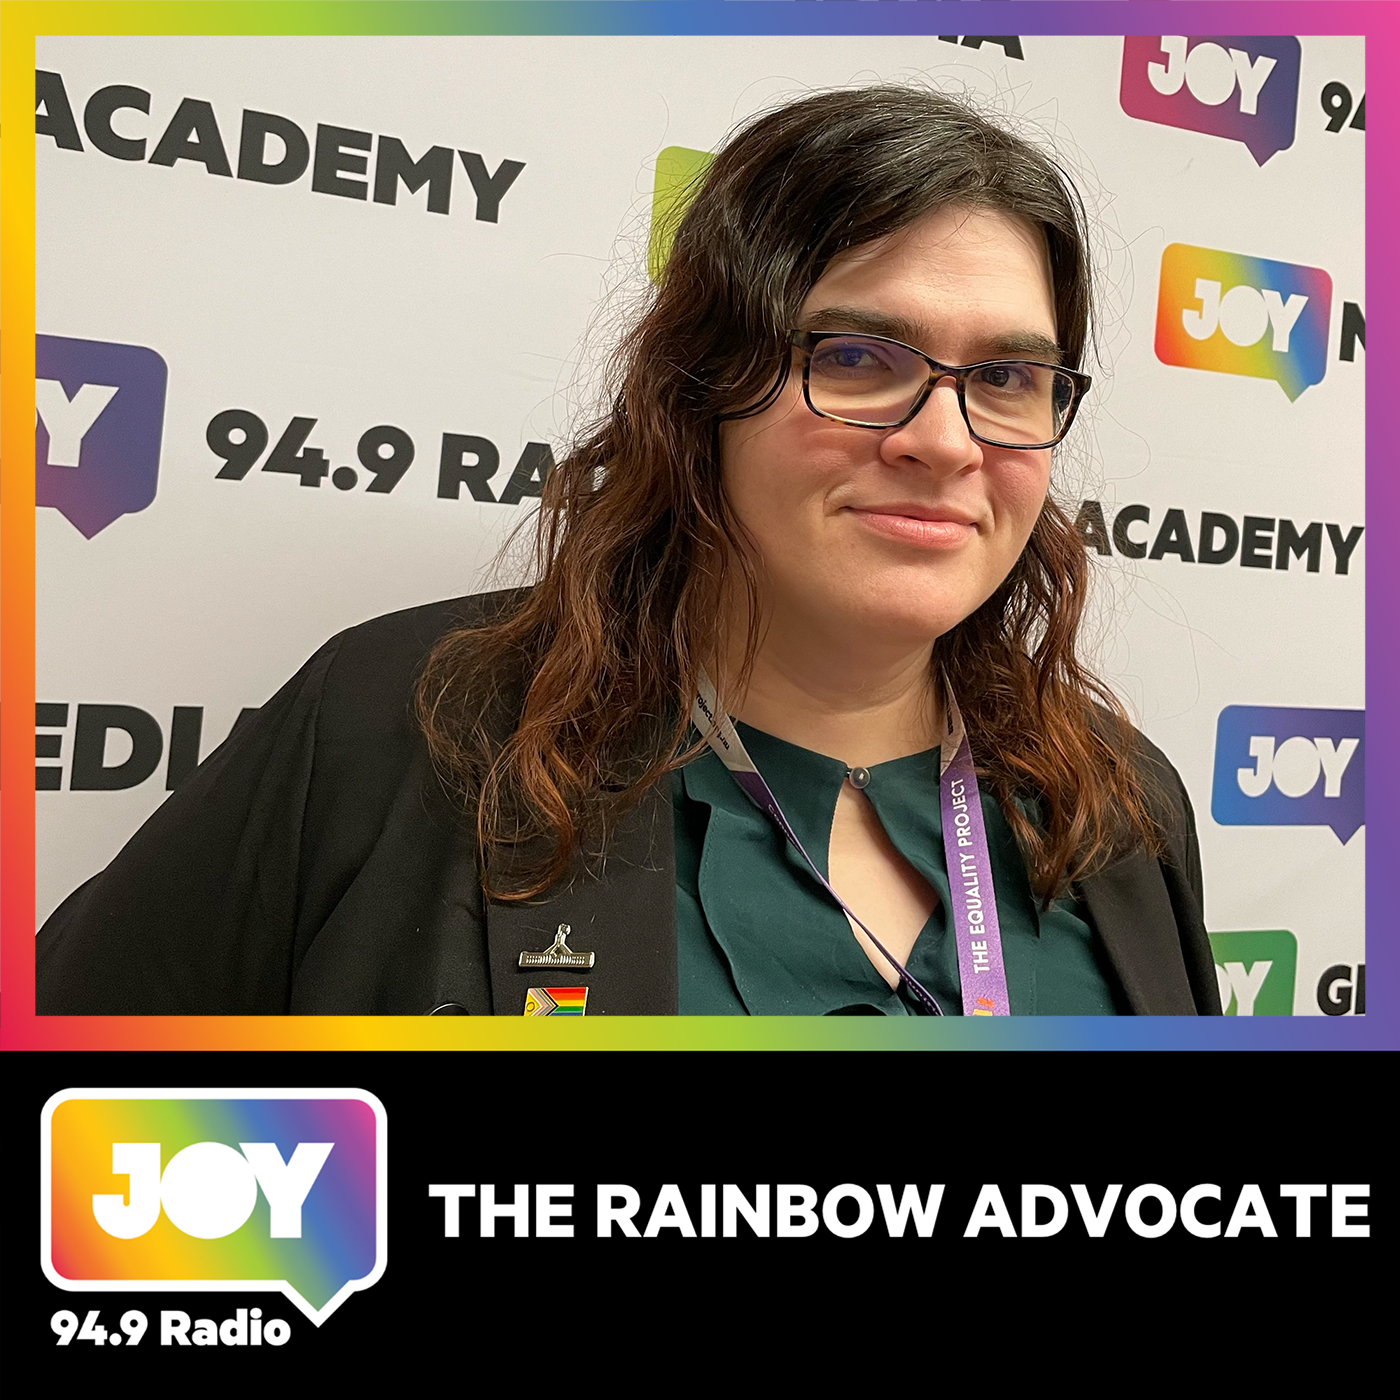 The Rainbow Advocate